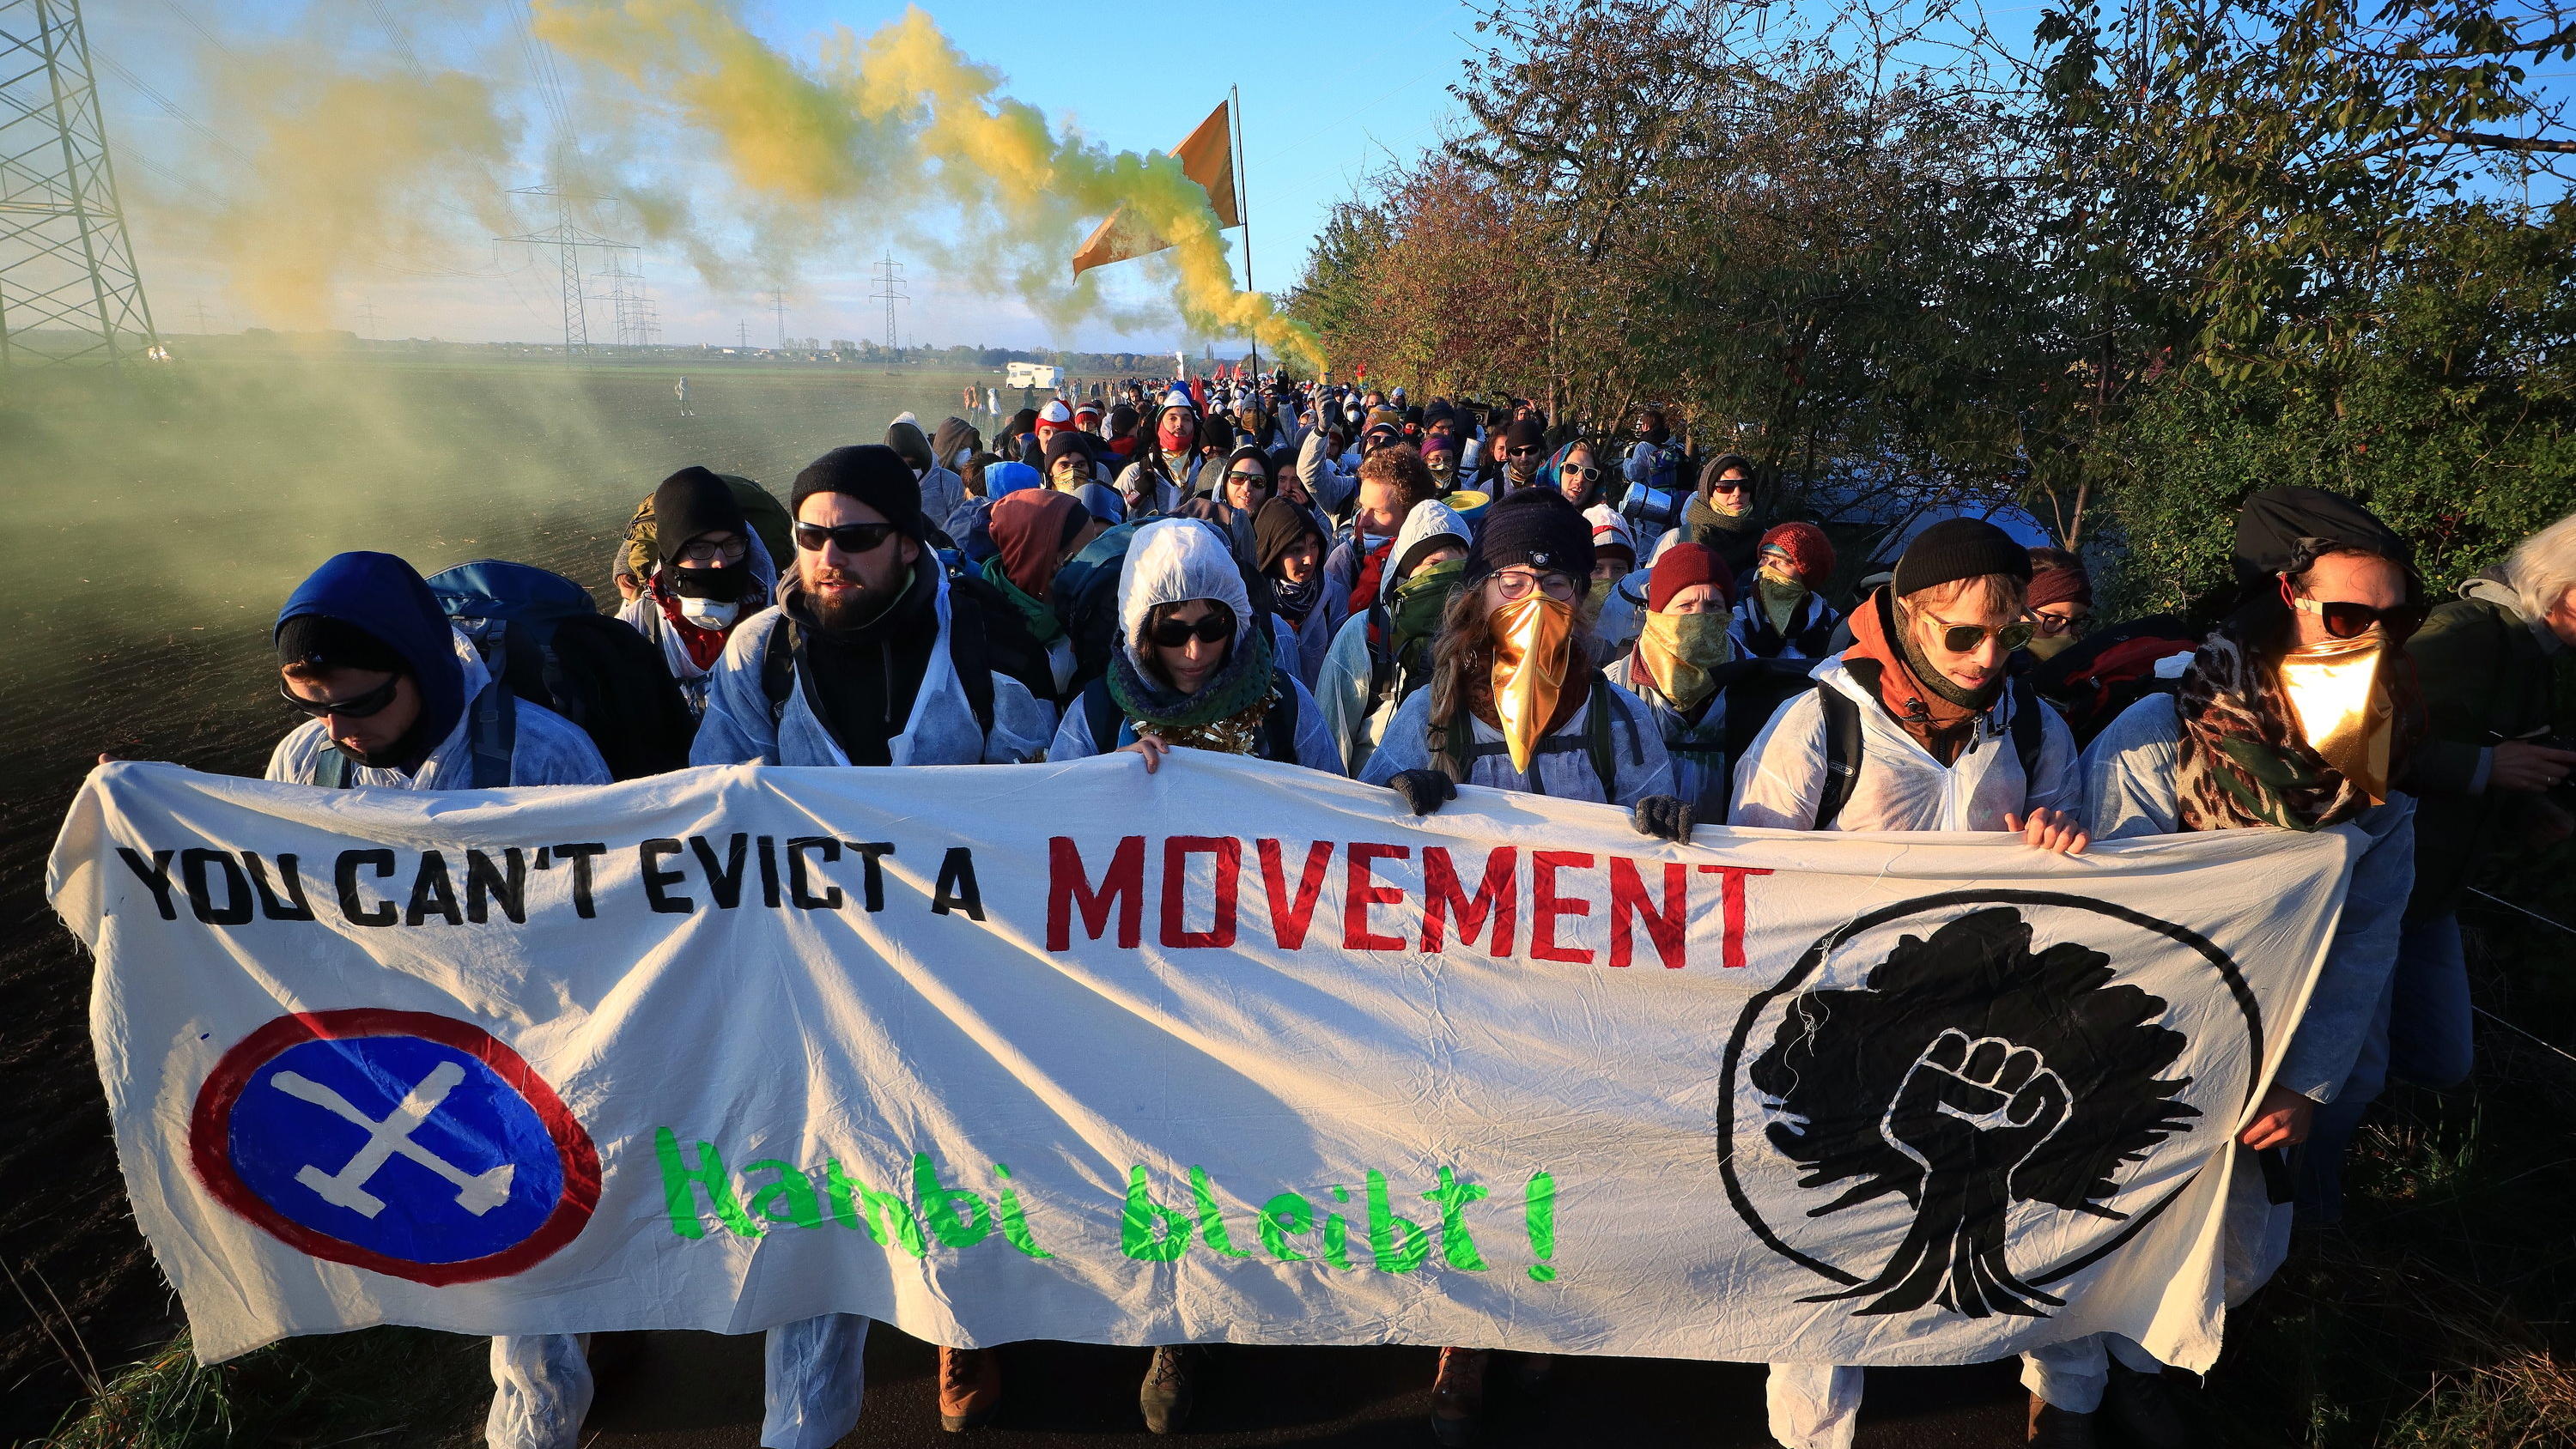 Umweltaktivisten des Aktionsbündnis "Ende Gelände" verlassen in einem Demonstrationszug ihr Lager in Düren in Richtung des Tagebaus Hambach.